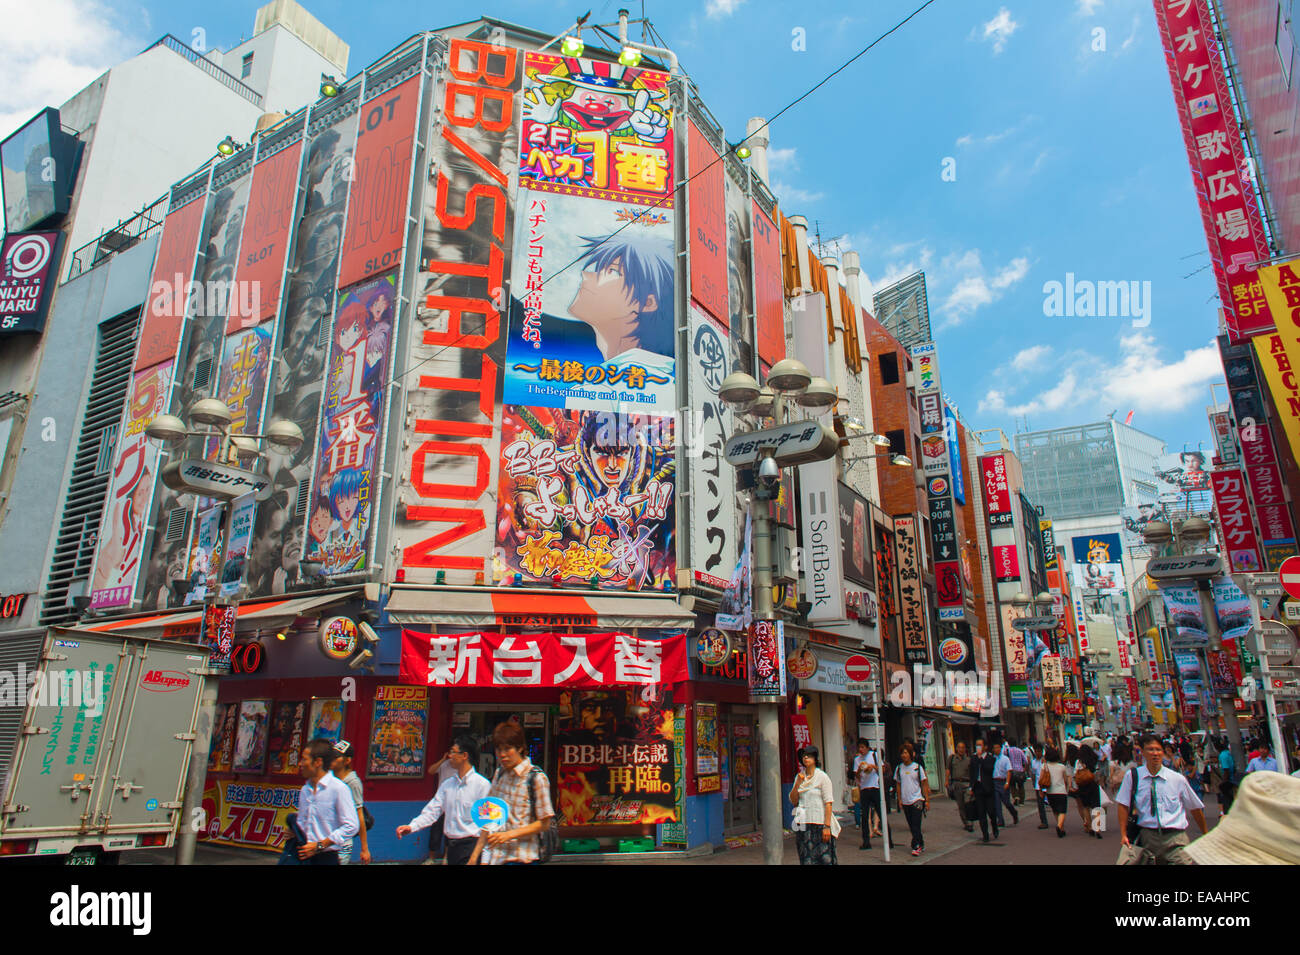 Belebten Einkaufsstraße vor allem für junge Menschen in Harajuku, Tokyo - Japan. Stockfoto